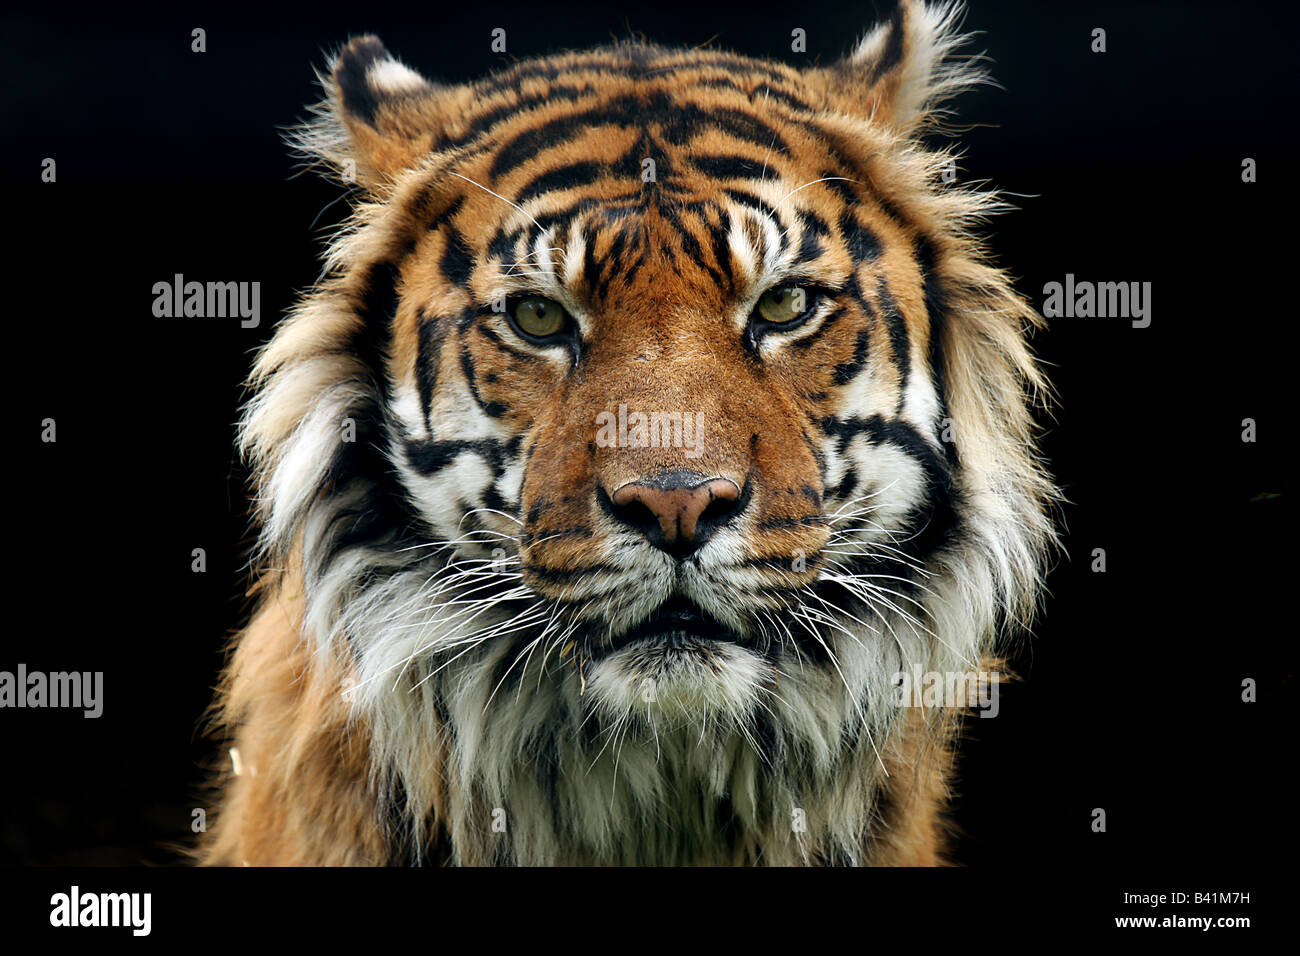 Sumatran Tiger staring at the camera. Stock Photo